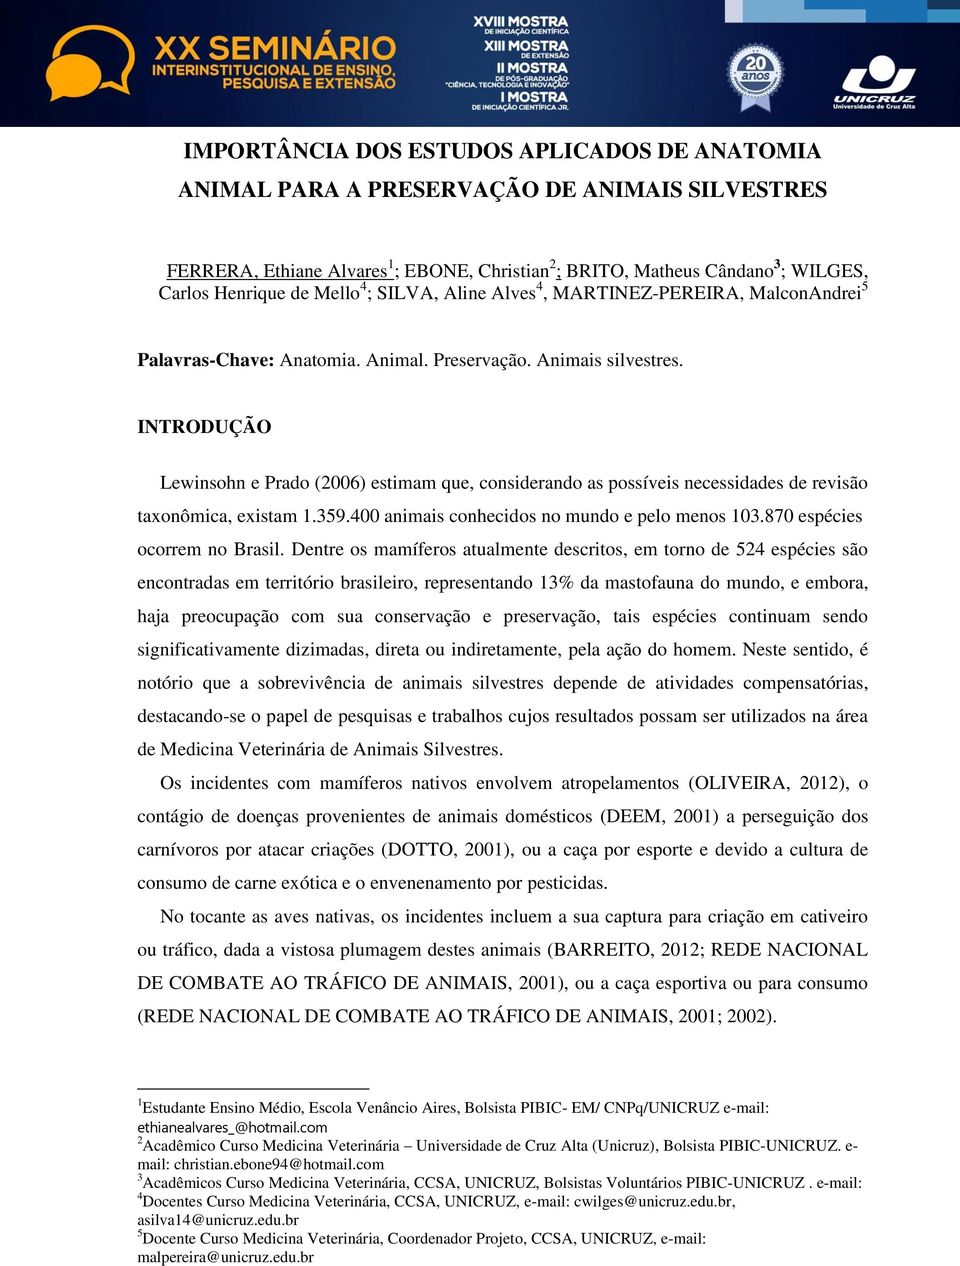 INTRODUÇÃO Lewinsohn e Prado (2006) estimam que, considerando as possíveis necessidades de revisão taxonômica, existam 1.359.400 animais conhecidos no mundo e pelo menos 103.